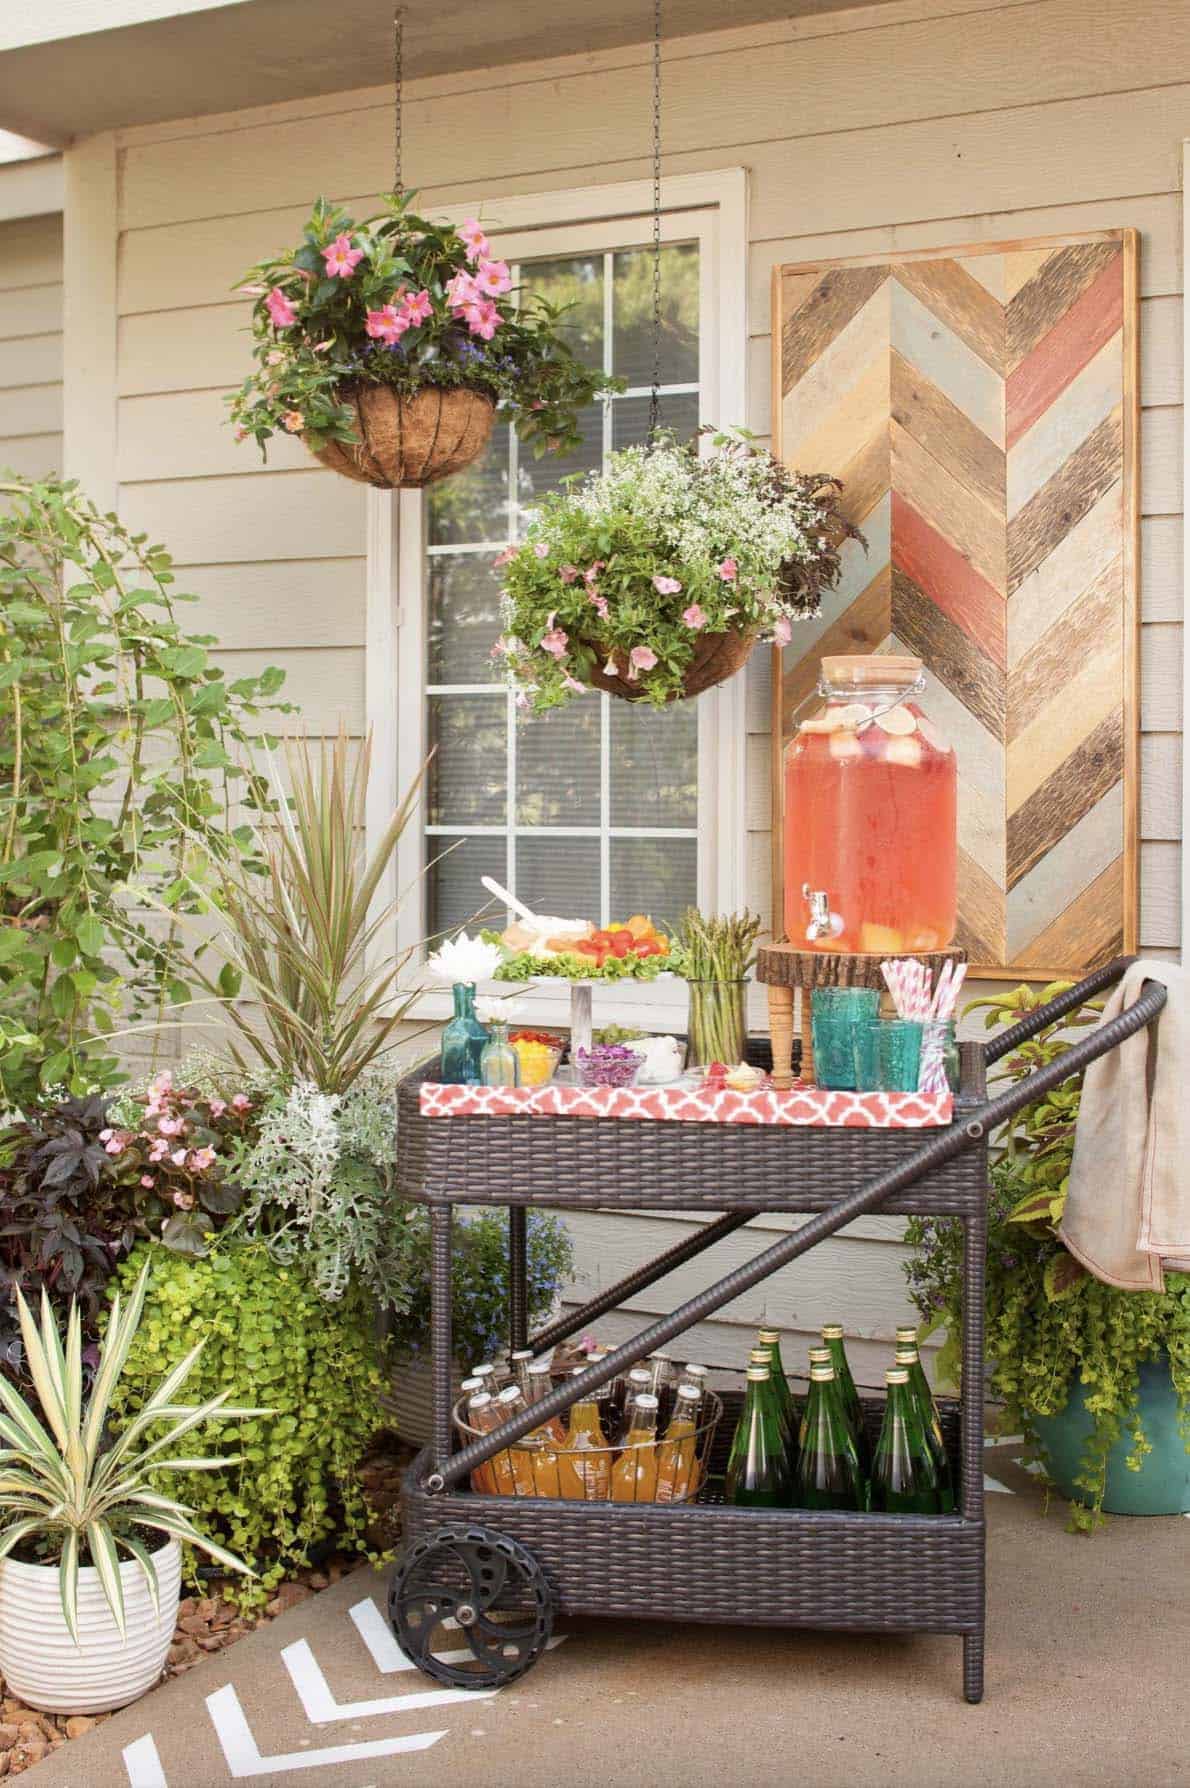 portable-bar-cart-on-backyard-patio-for-entertaining